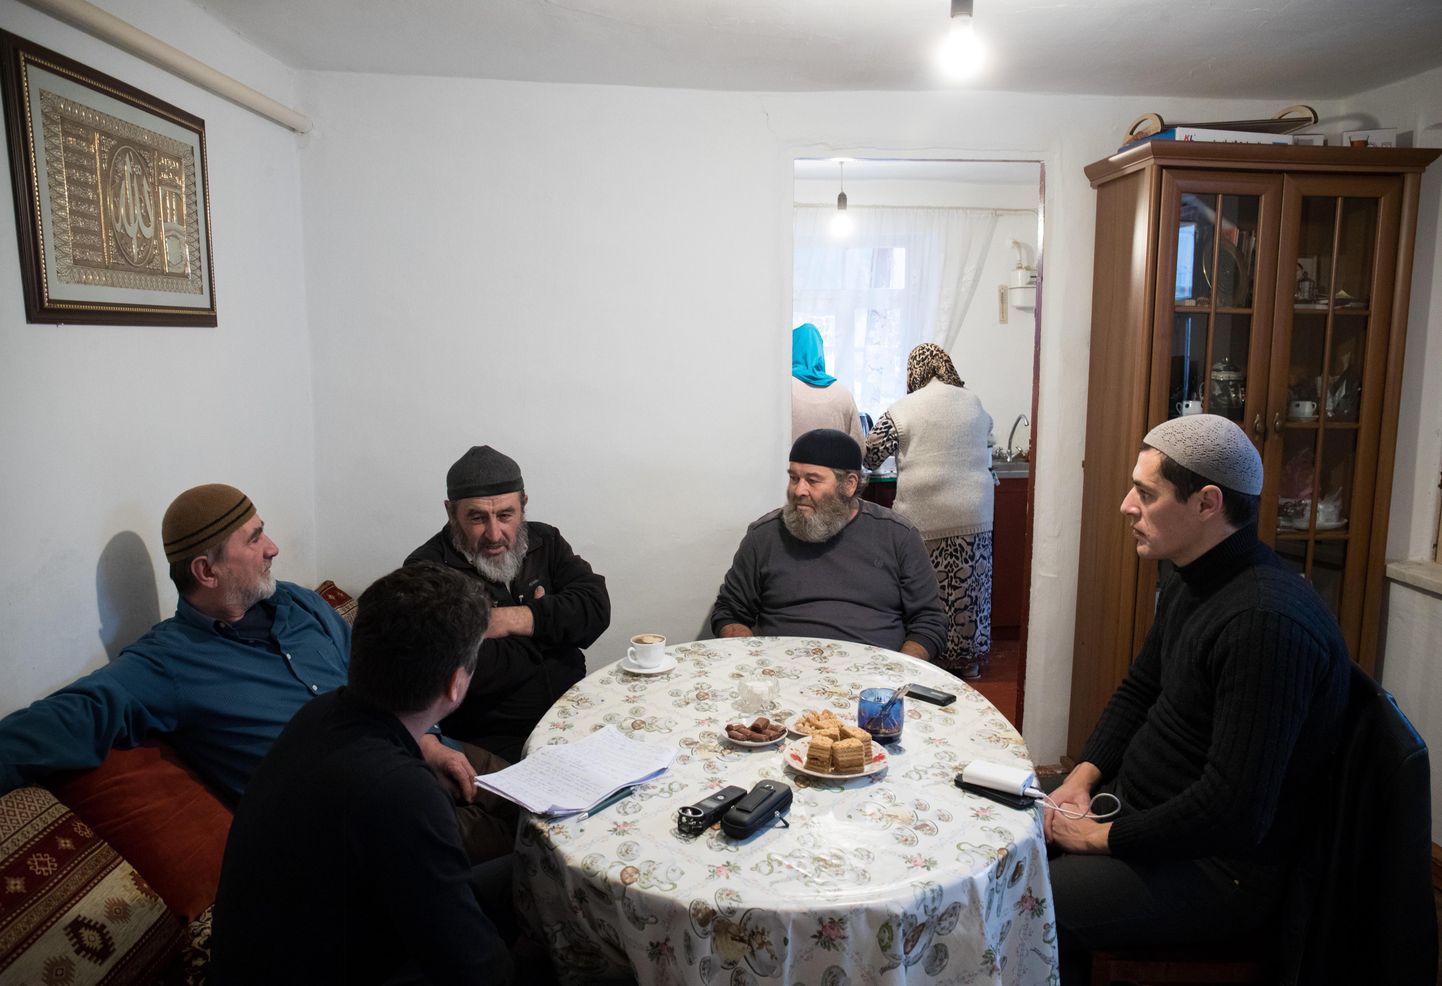 Bahtšisarai vanalinnas elavate krimmi-tatarlaste vanemad on kogunenud Remzi Zudievi (paremalt teine) koju. Temast vasakul istub kohalike üks peamisi eestkõnelejaid Enver Seitmemetov ning temast omakorda vasakul kuulab teda Sijar Gofarov. Kõige parema istub noorema rahva aktivist Ahmat Suleimanov. Remzi Zudievil on harukordselt vedanud, sest temal õnnestus Kesk-Aasiast naasmise järel osta tagasi oma vanavanemate maja. Esivanemate majas elavad vähesed krimmi-tatarlased. Naised valmistavad samal ajal köögis külalistele pirukaid.